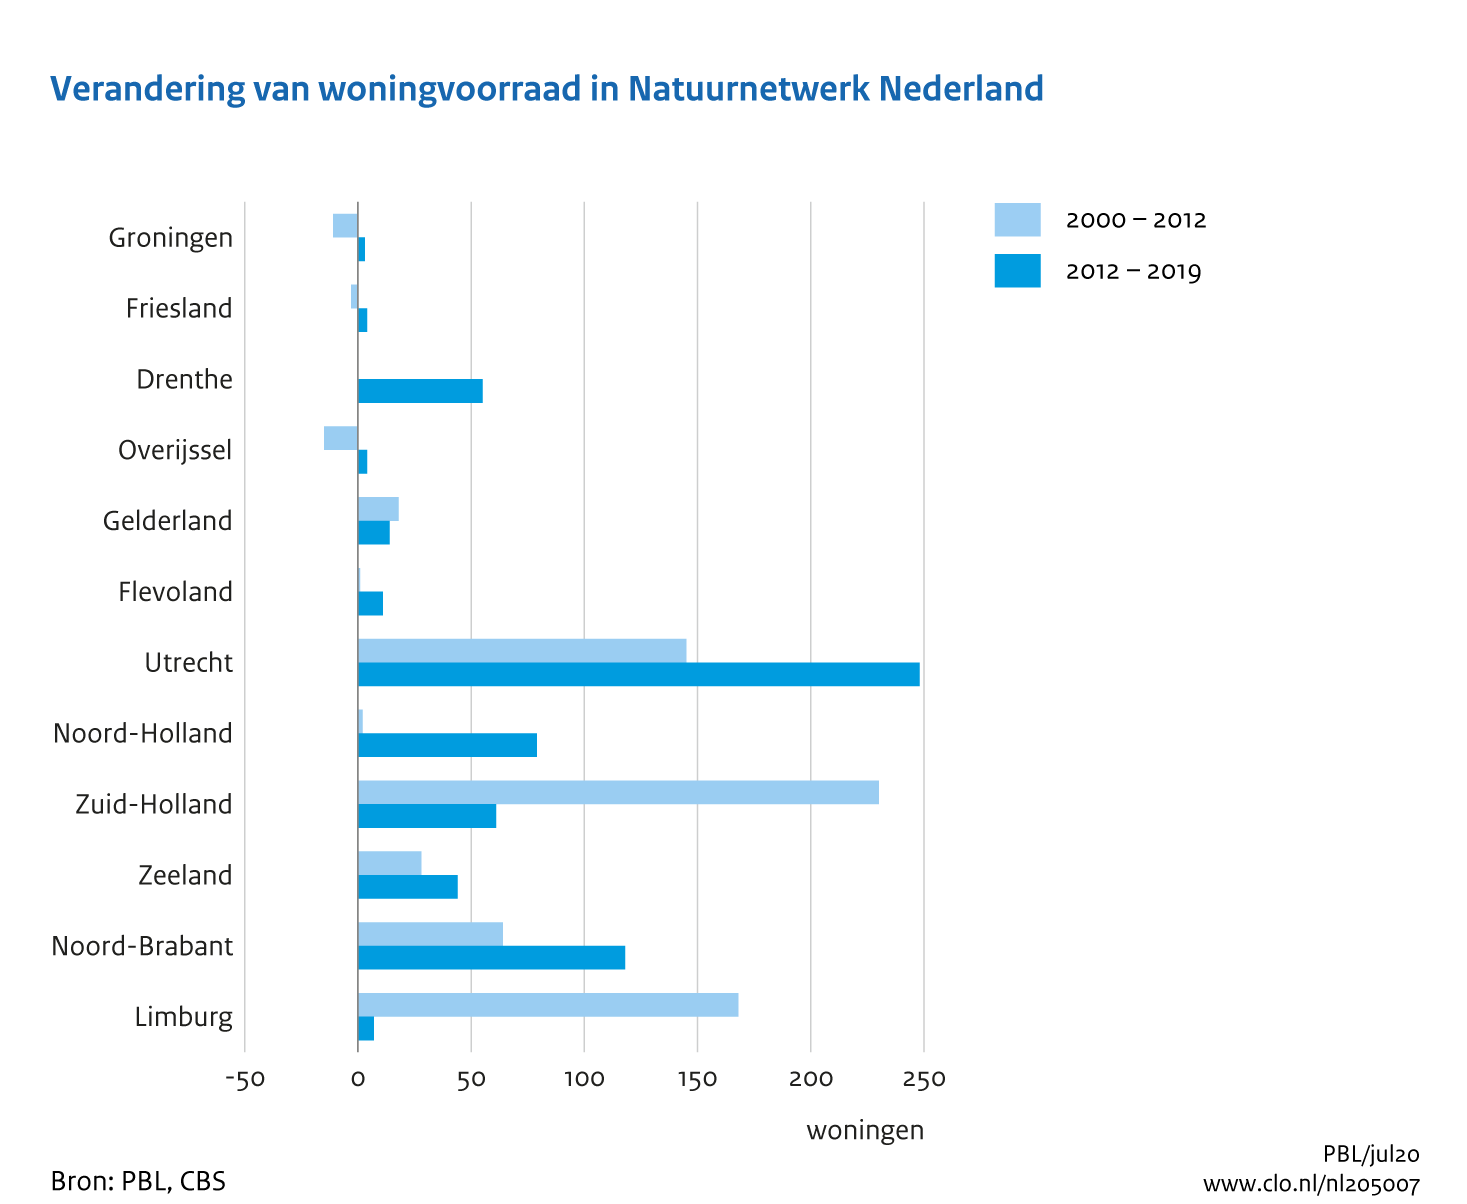 Figuur Verandering van de woningvoorraad in het Natuurnetwerk Nederland, 2000-2019. In de rest van de tekst wordt deze figuur uitgebreider uitgelegd.